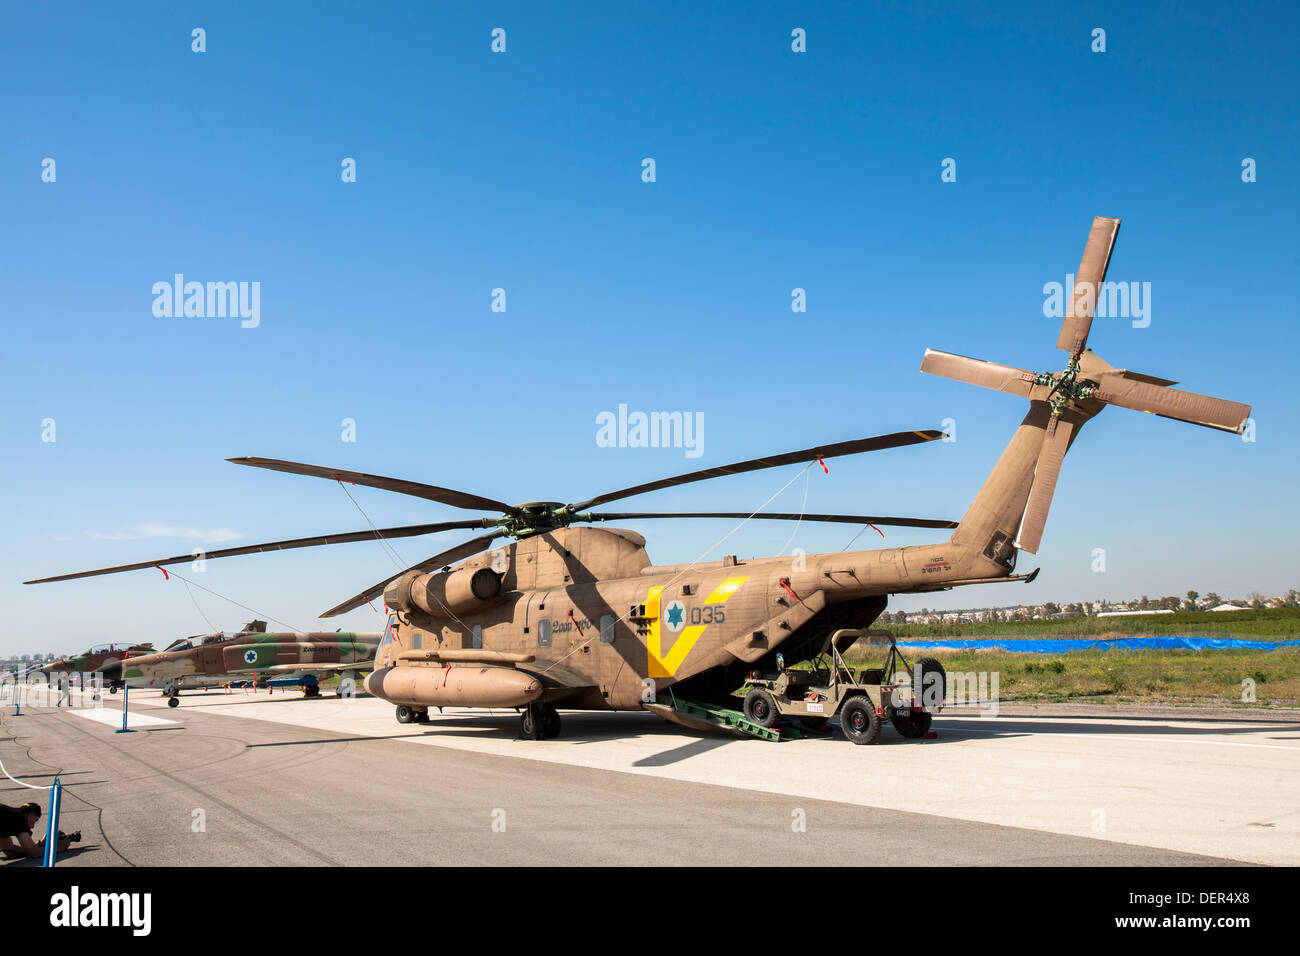 De l'air israélienne (IAF) hélicoptère Sikorsky CH-53 sur le terrain Banque D'Images